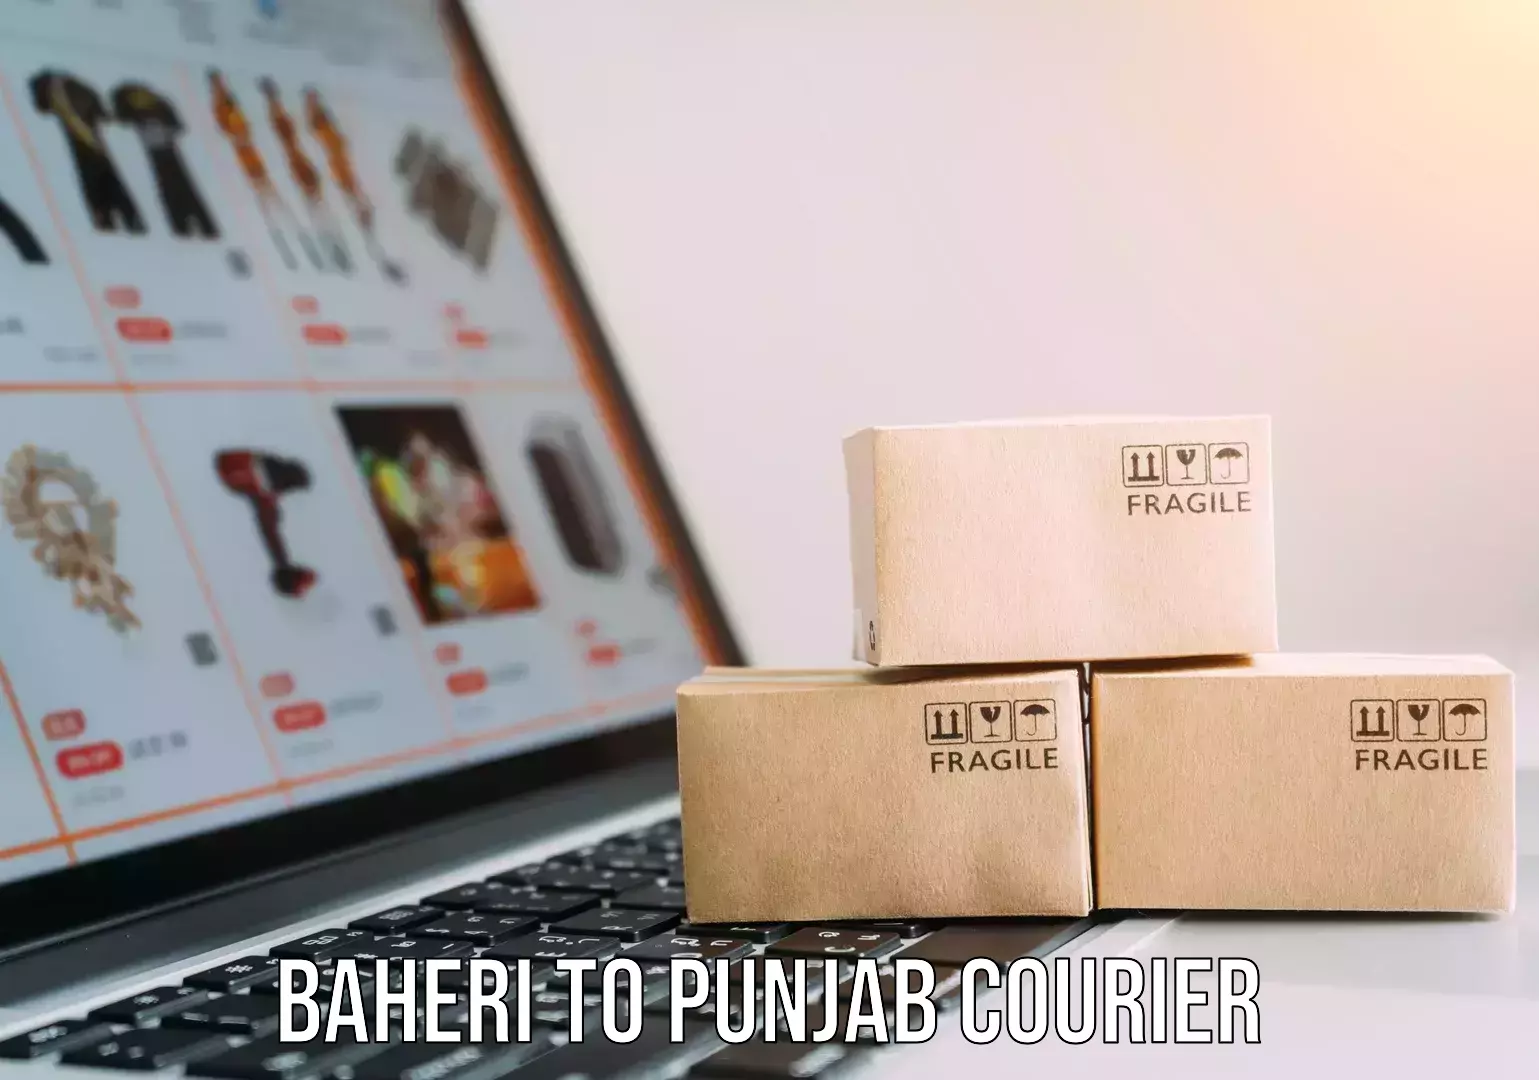 Flexible parcel services Baheri to Punjab